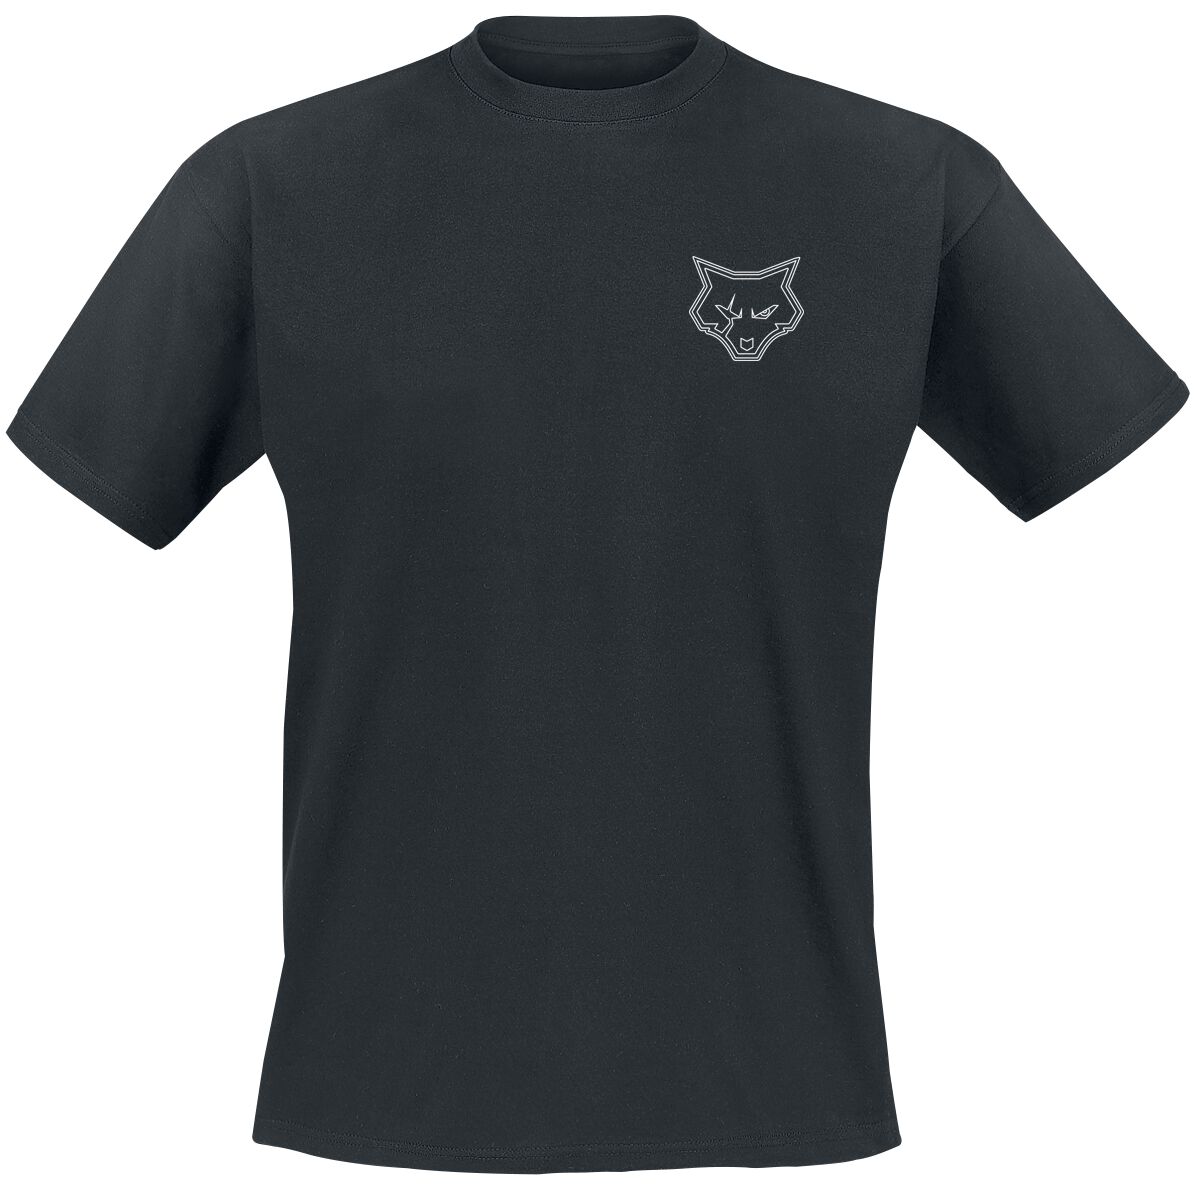 Bad Wolves T-Shirt - Bad F*cking Wolves - S bis 4XL - für Männer - Größe XXL - schwarz  - Lizenziertes Merchandise!